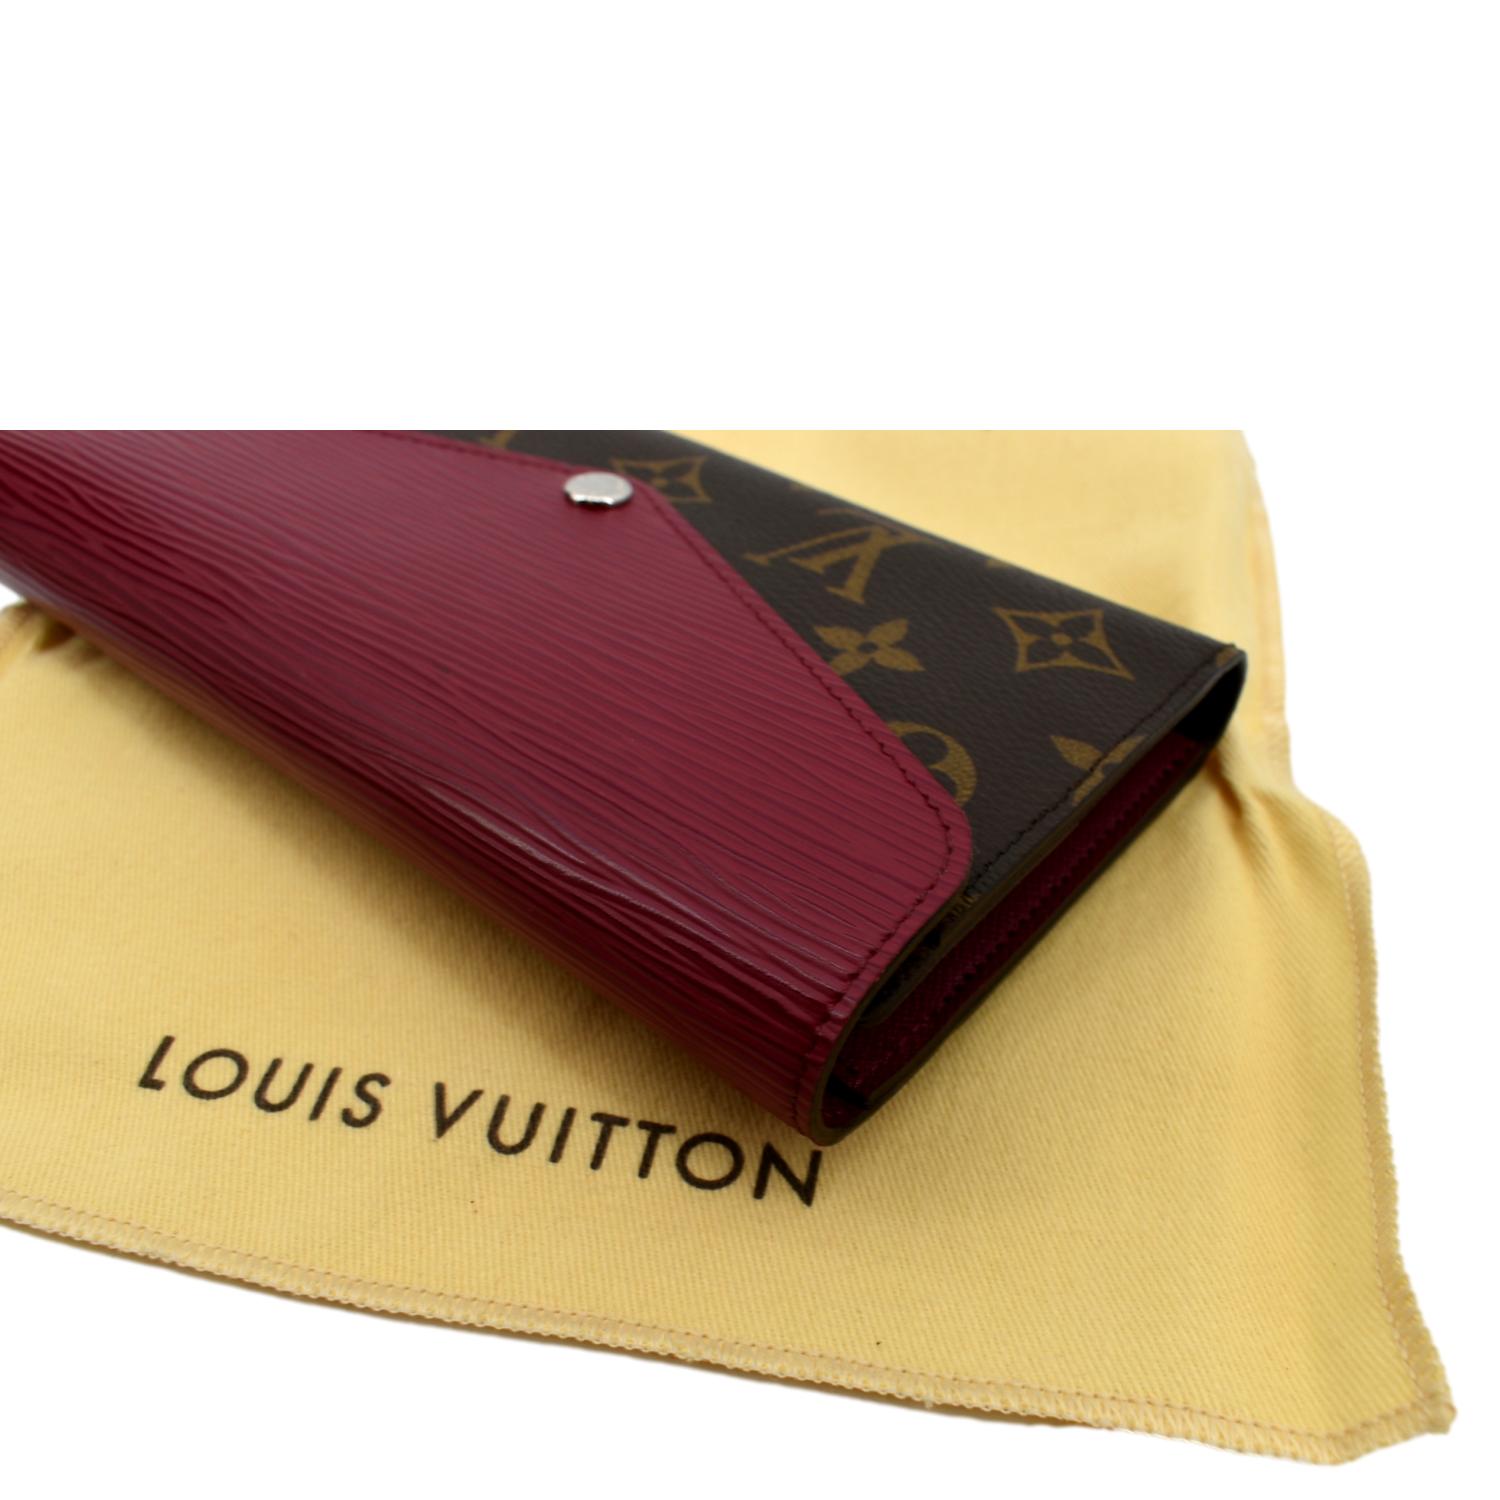 Louis Vuitton Marie Lou Long Wallet REVIEW!!! 